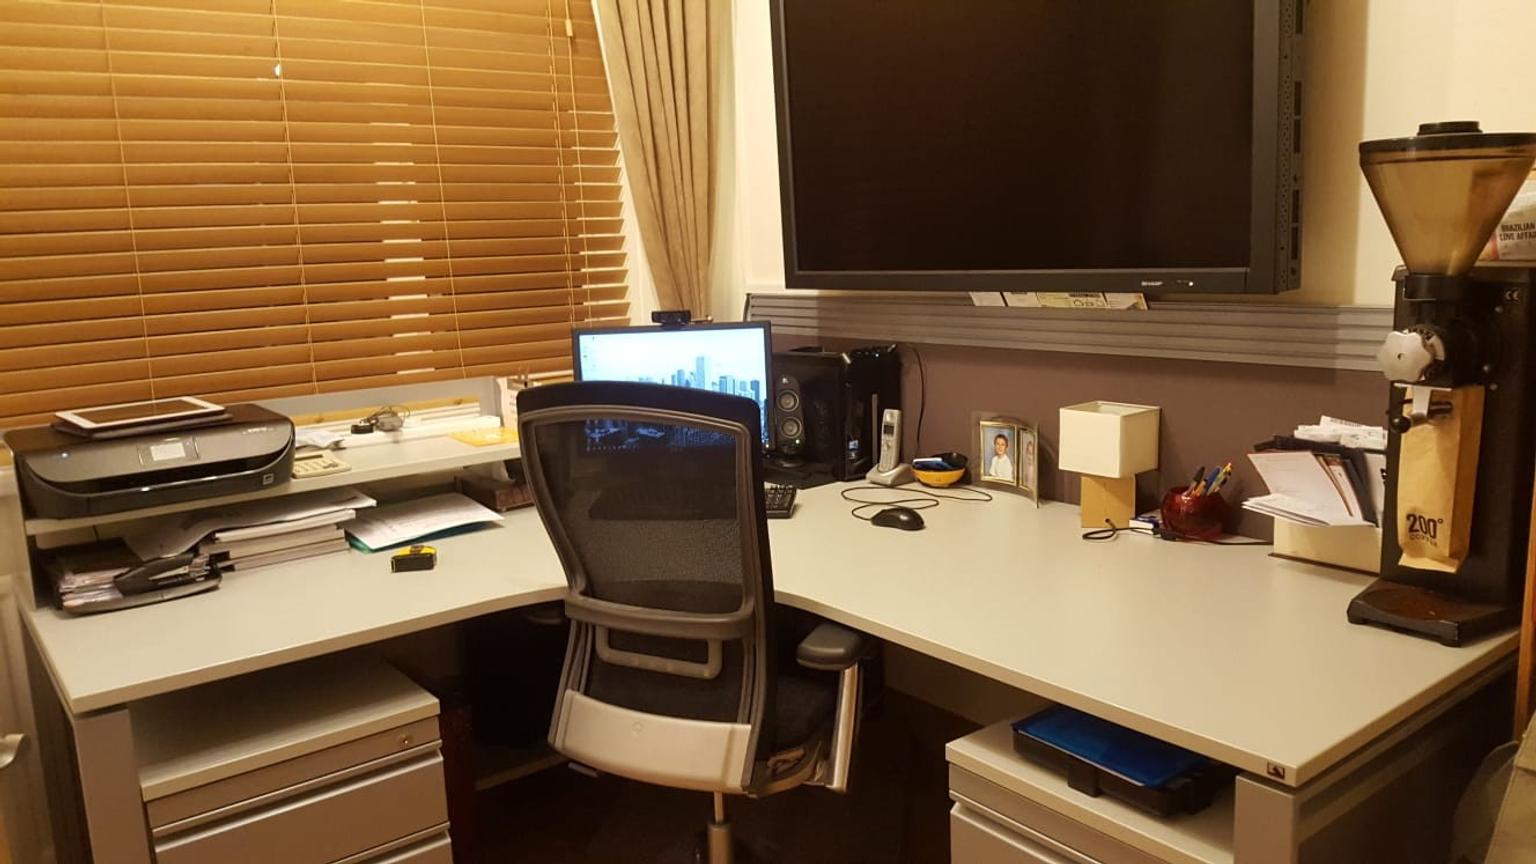 Large Home Office Desk Set Up In Ng5 Gedling Fur 60 00 Zum